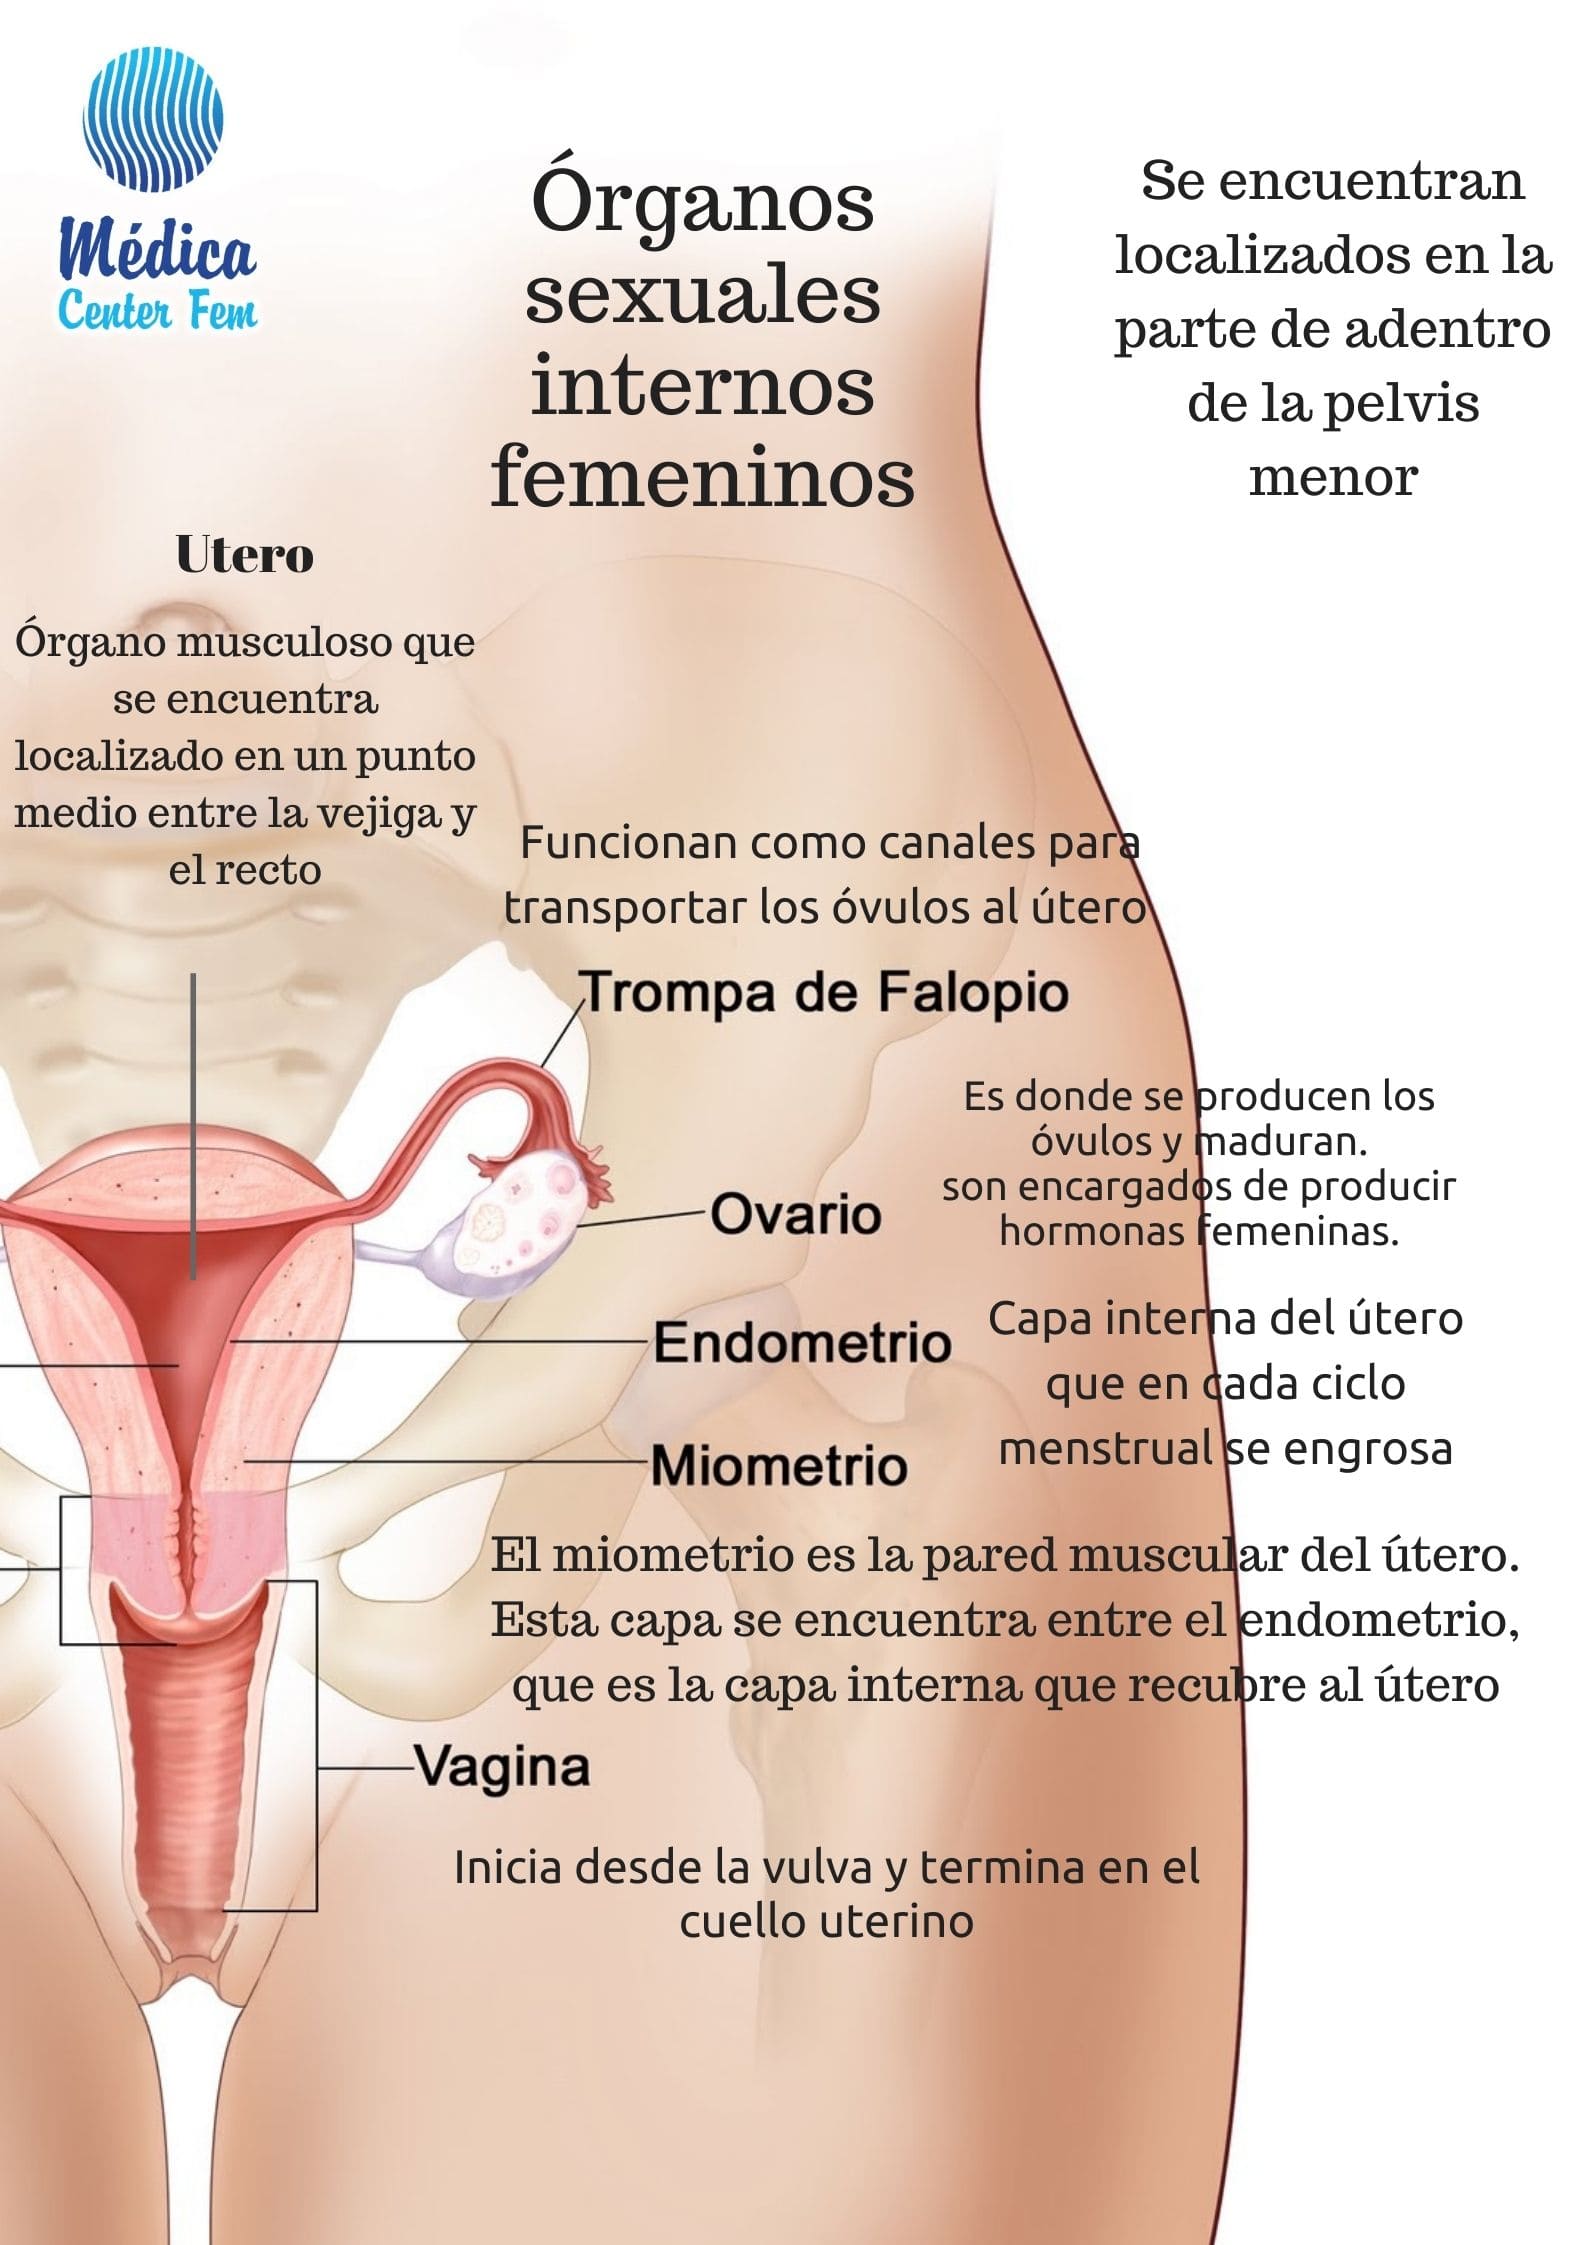 Anatomía ¿Cuáles son las partes de la Vagina?